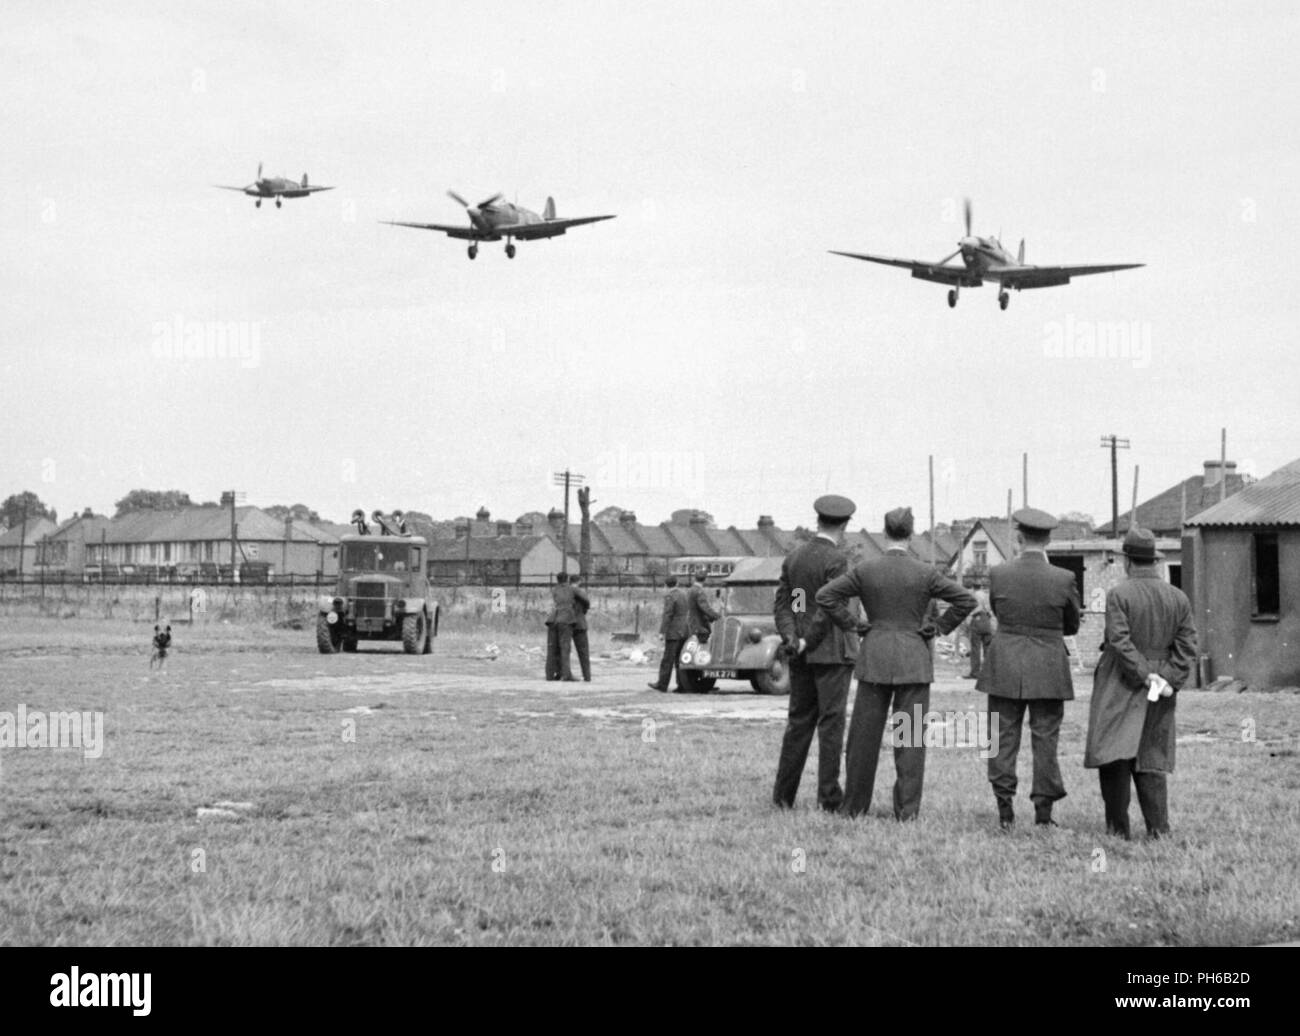 Personal Nr. 121 (Eagle) Squadron zusehen, wie drei Supermarine Spitfire Flugzeuge landen nach einem Fighter Sweep über nordfrankreich an der Royal Air Force Rochford in Essex, England, August 1942. Einige der Unterkünfte durch die Staffel ist im Hintergrund sichtbar, da sind mehrere zivile Häuser und zwei RAF-Fahrzeuge. Stockfoto